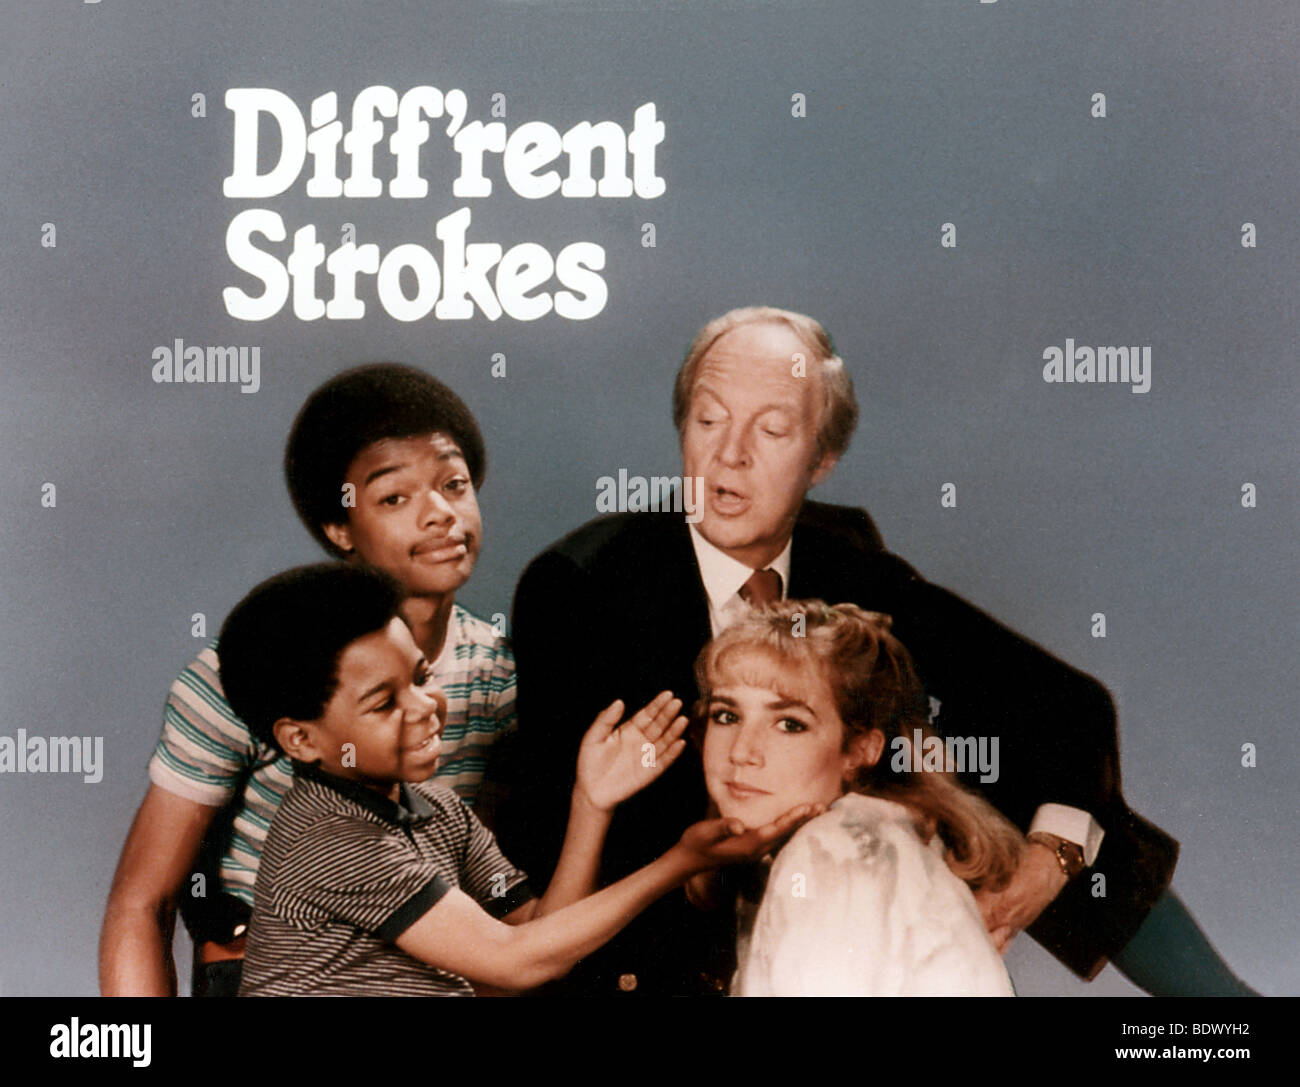 DIFF'RENT STROKES - séries télévisées américaines avec de gauche à droite : Gary Coleman, Todd Bridges, Conrad Bain et Dana Plato Banque D'Images